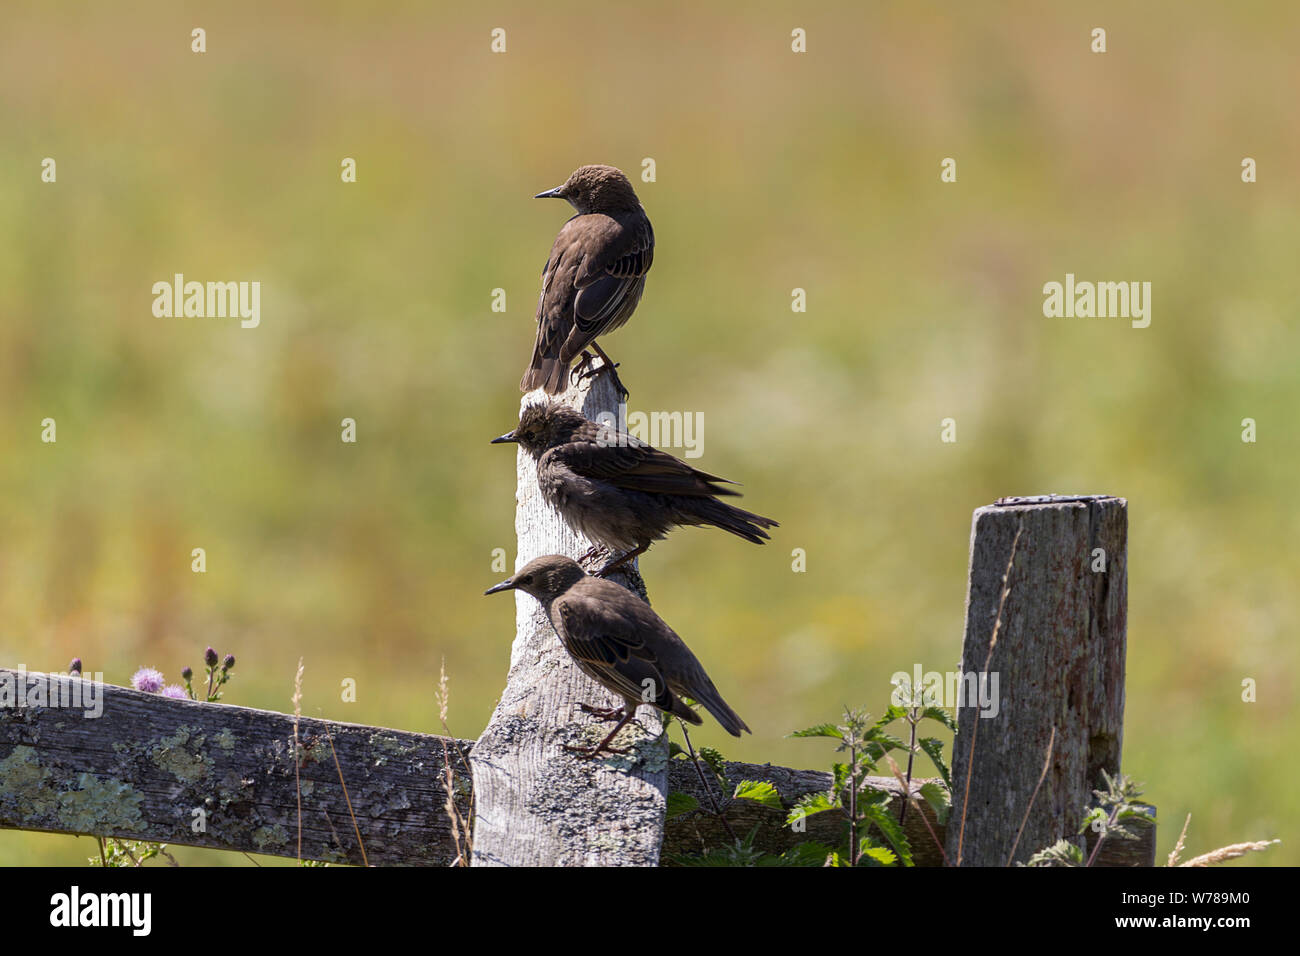 Starnuti (Sturnus vulgaris) giovani uccelli su palo di recinzione con plumage grigio chiaro e gola pallida. Le lessette affilate lunghe sono più scure nei giovani Foto Stock